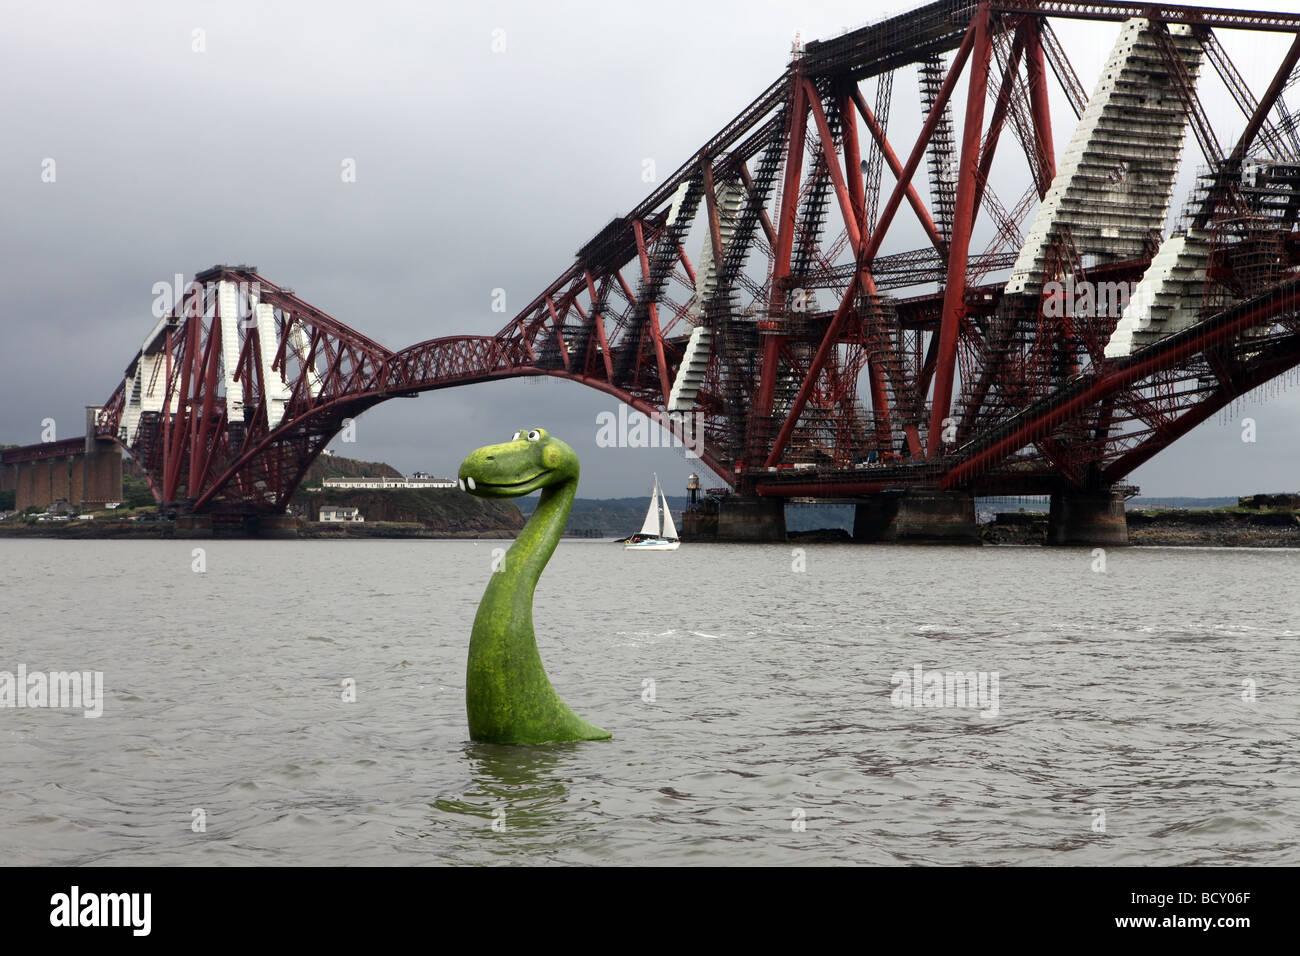 Modèle réaliste du Loch Ness dans l'eau à l'estuaire de la Forth à côté de la Forth Rail Bridge, Edinburgh, Ecosse, Royaume-Uni Banque D'Images